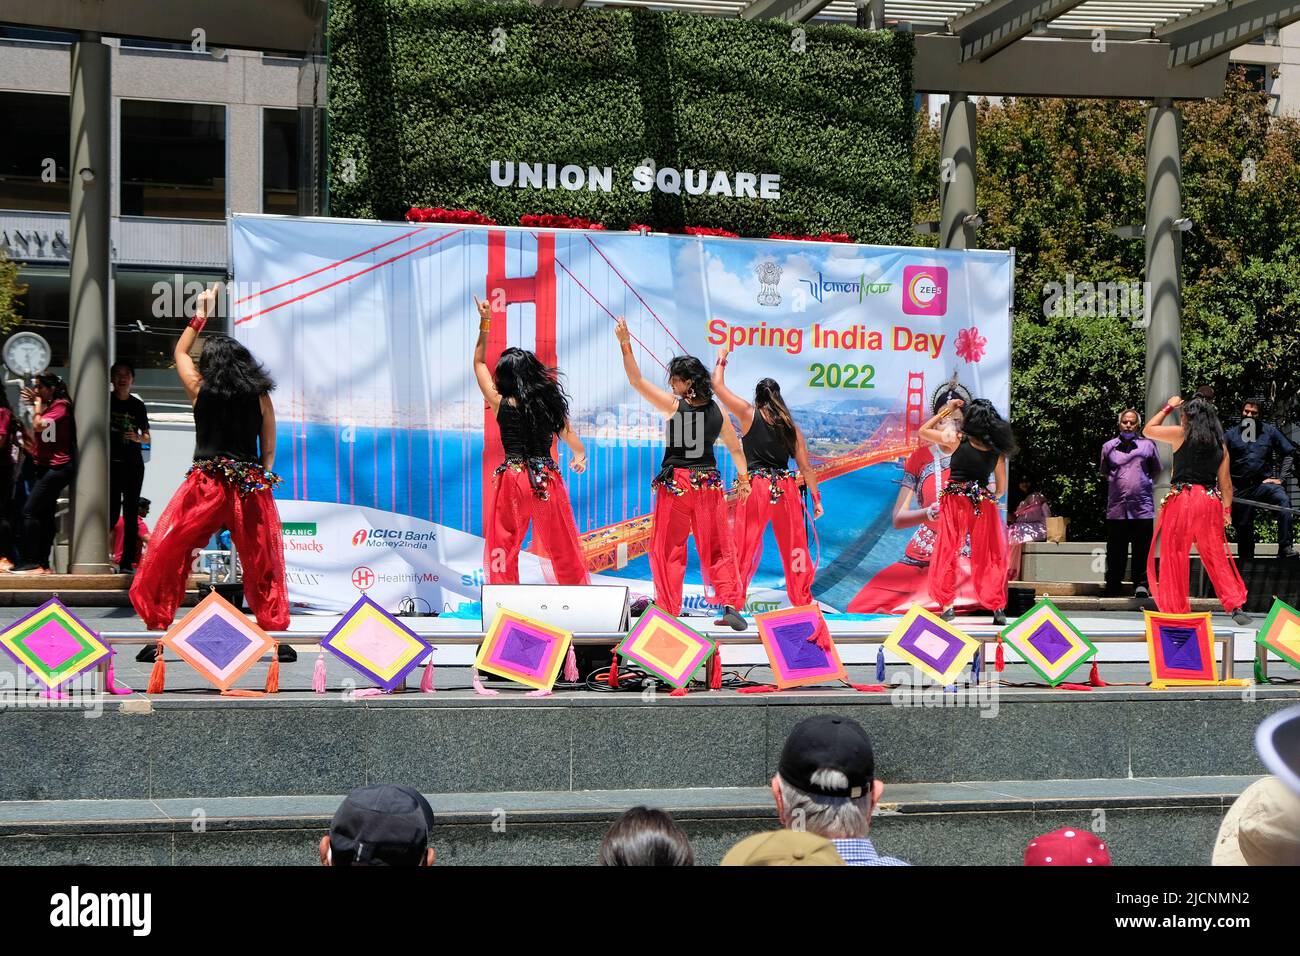 Artisti al Spring India Day 2022 presso Union Square nel centro di San Francisco, California, che celebrano la cultura indiana nella Bay Area. Foto Stock